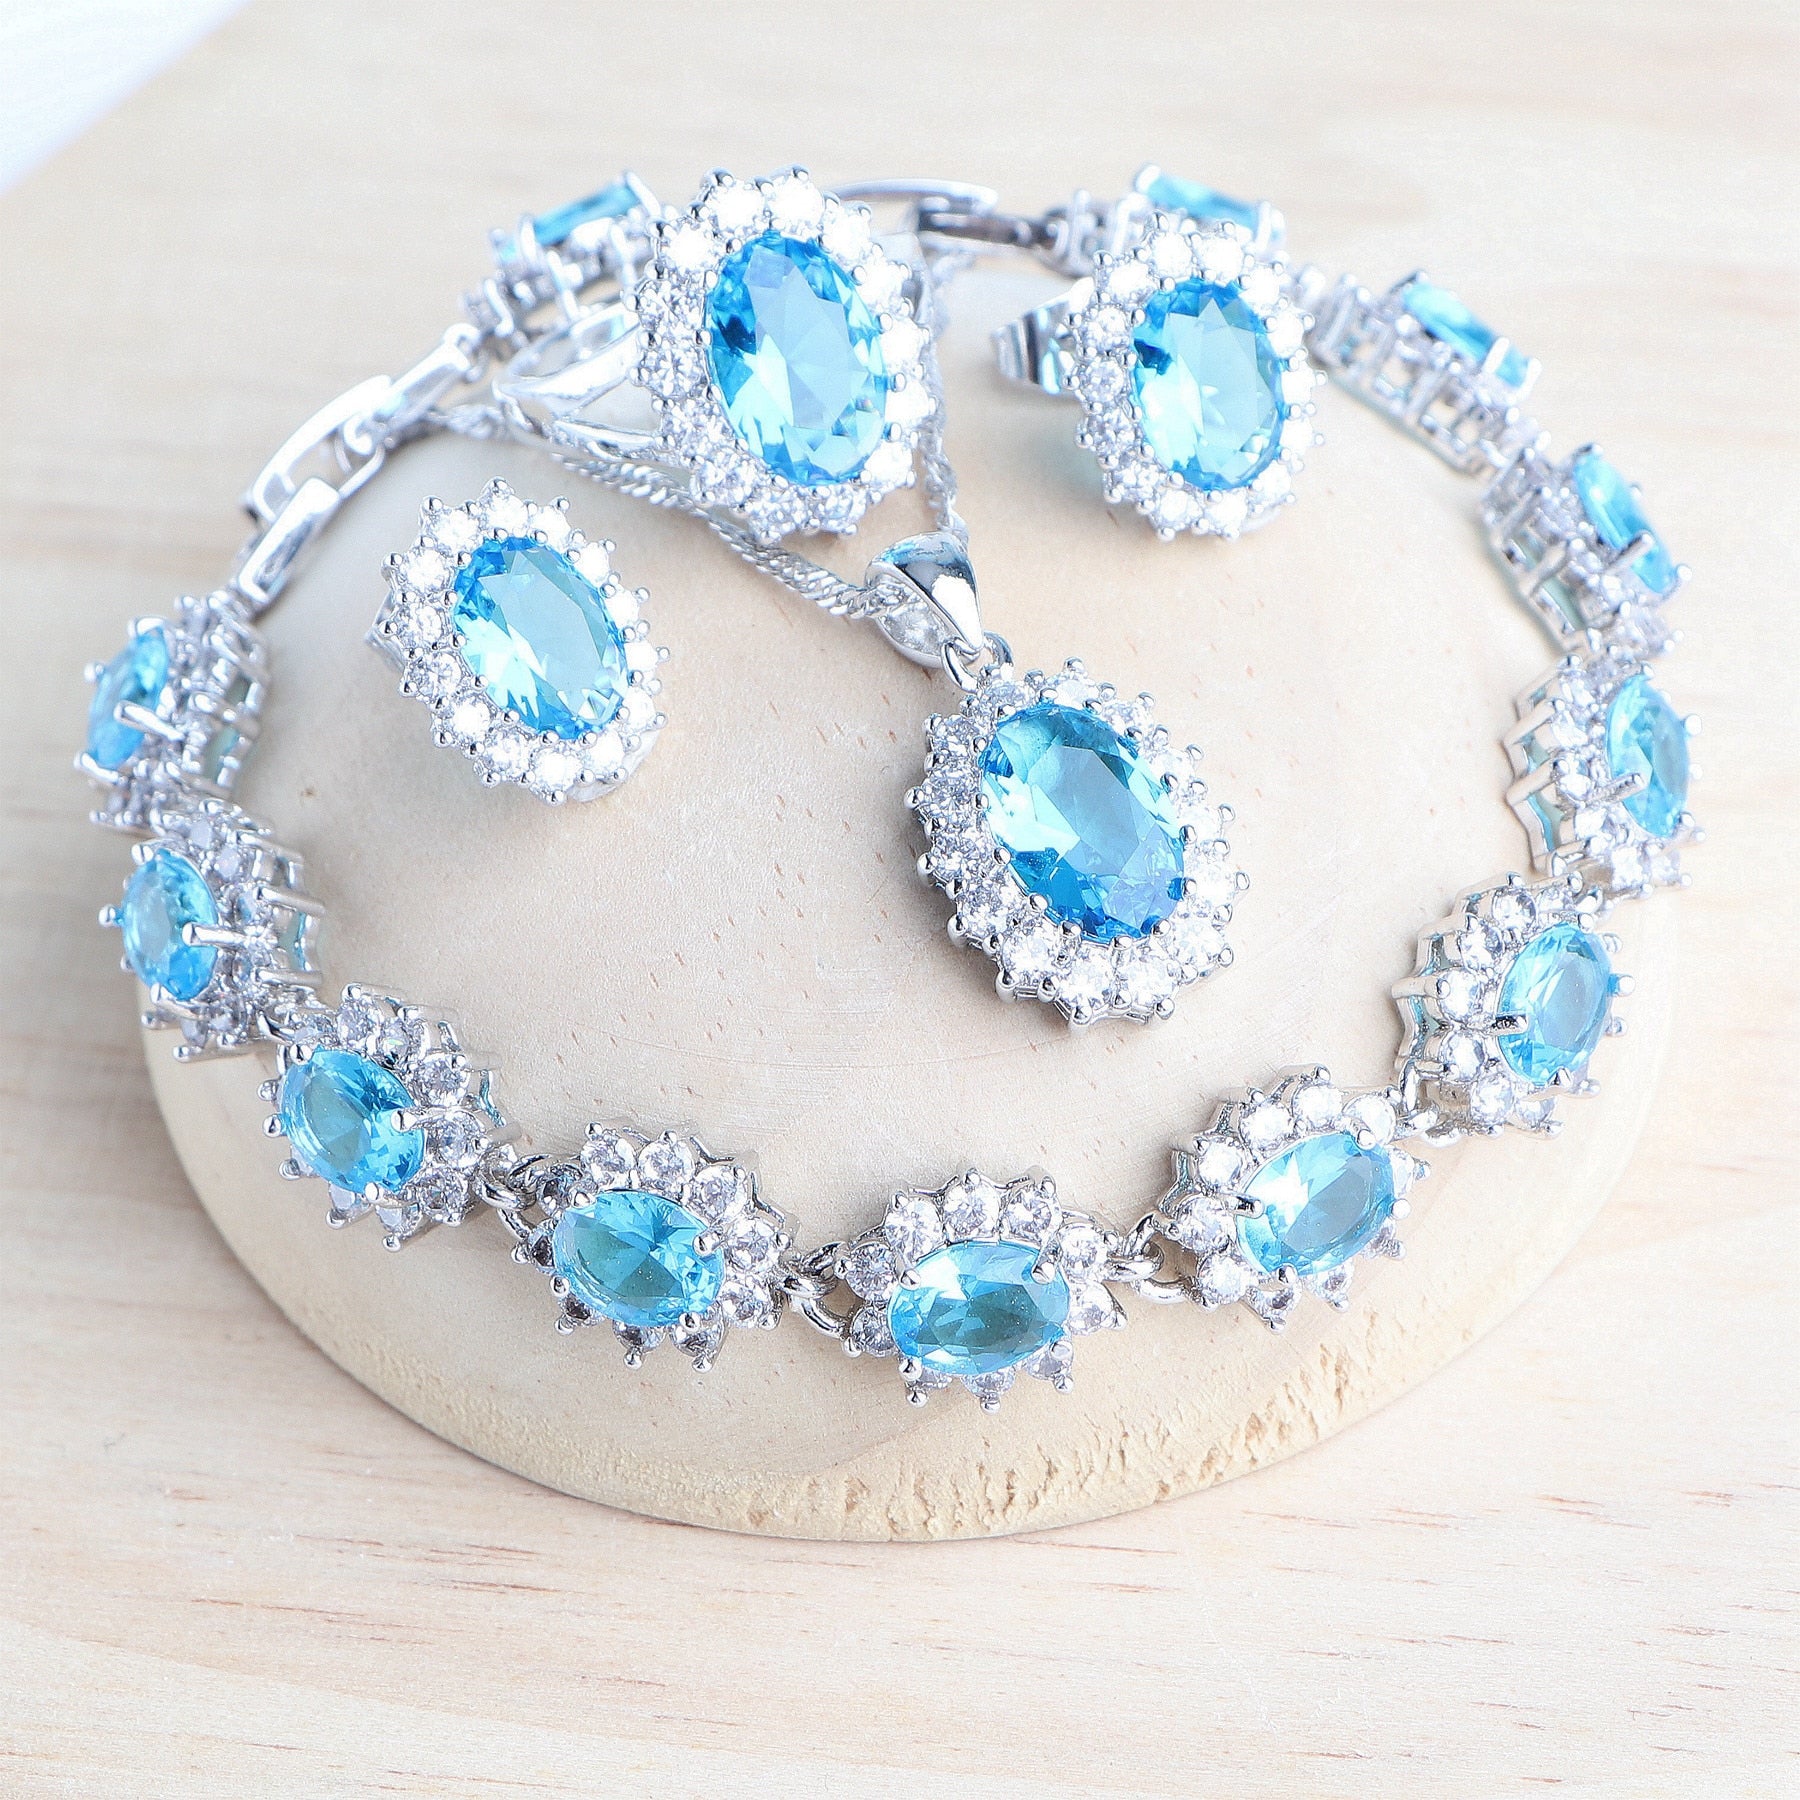 Maytrends Women Bridal Jewelry Sets Blue Zirconia Costume Fine Jewellery Wedding Necklace Earrings Rings Bracelets Pendant Set